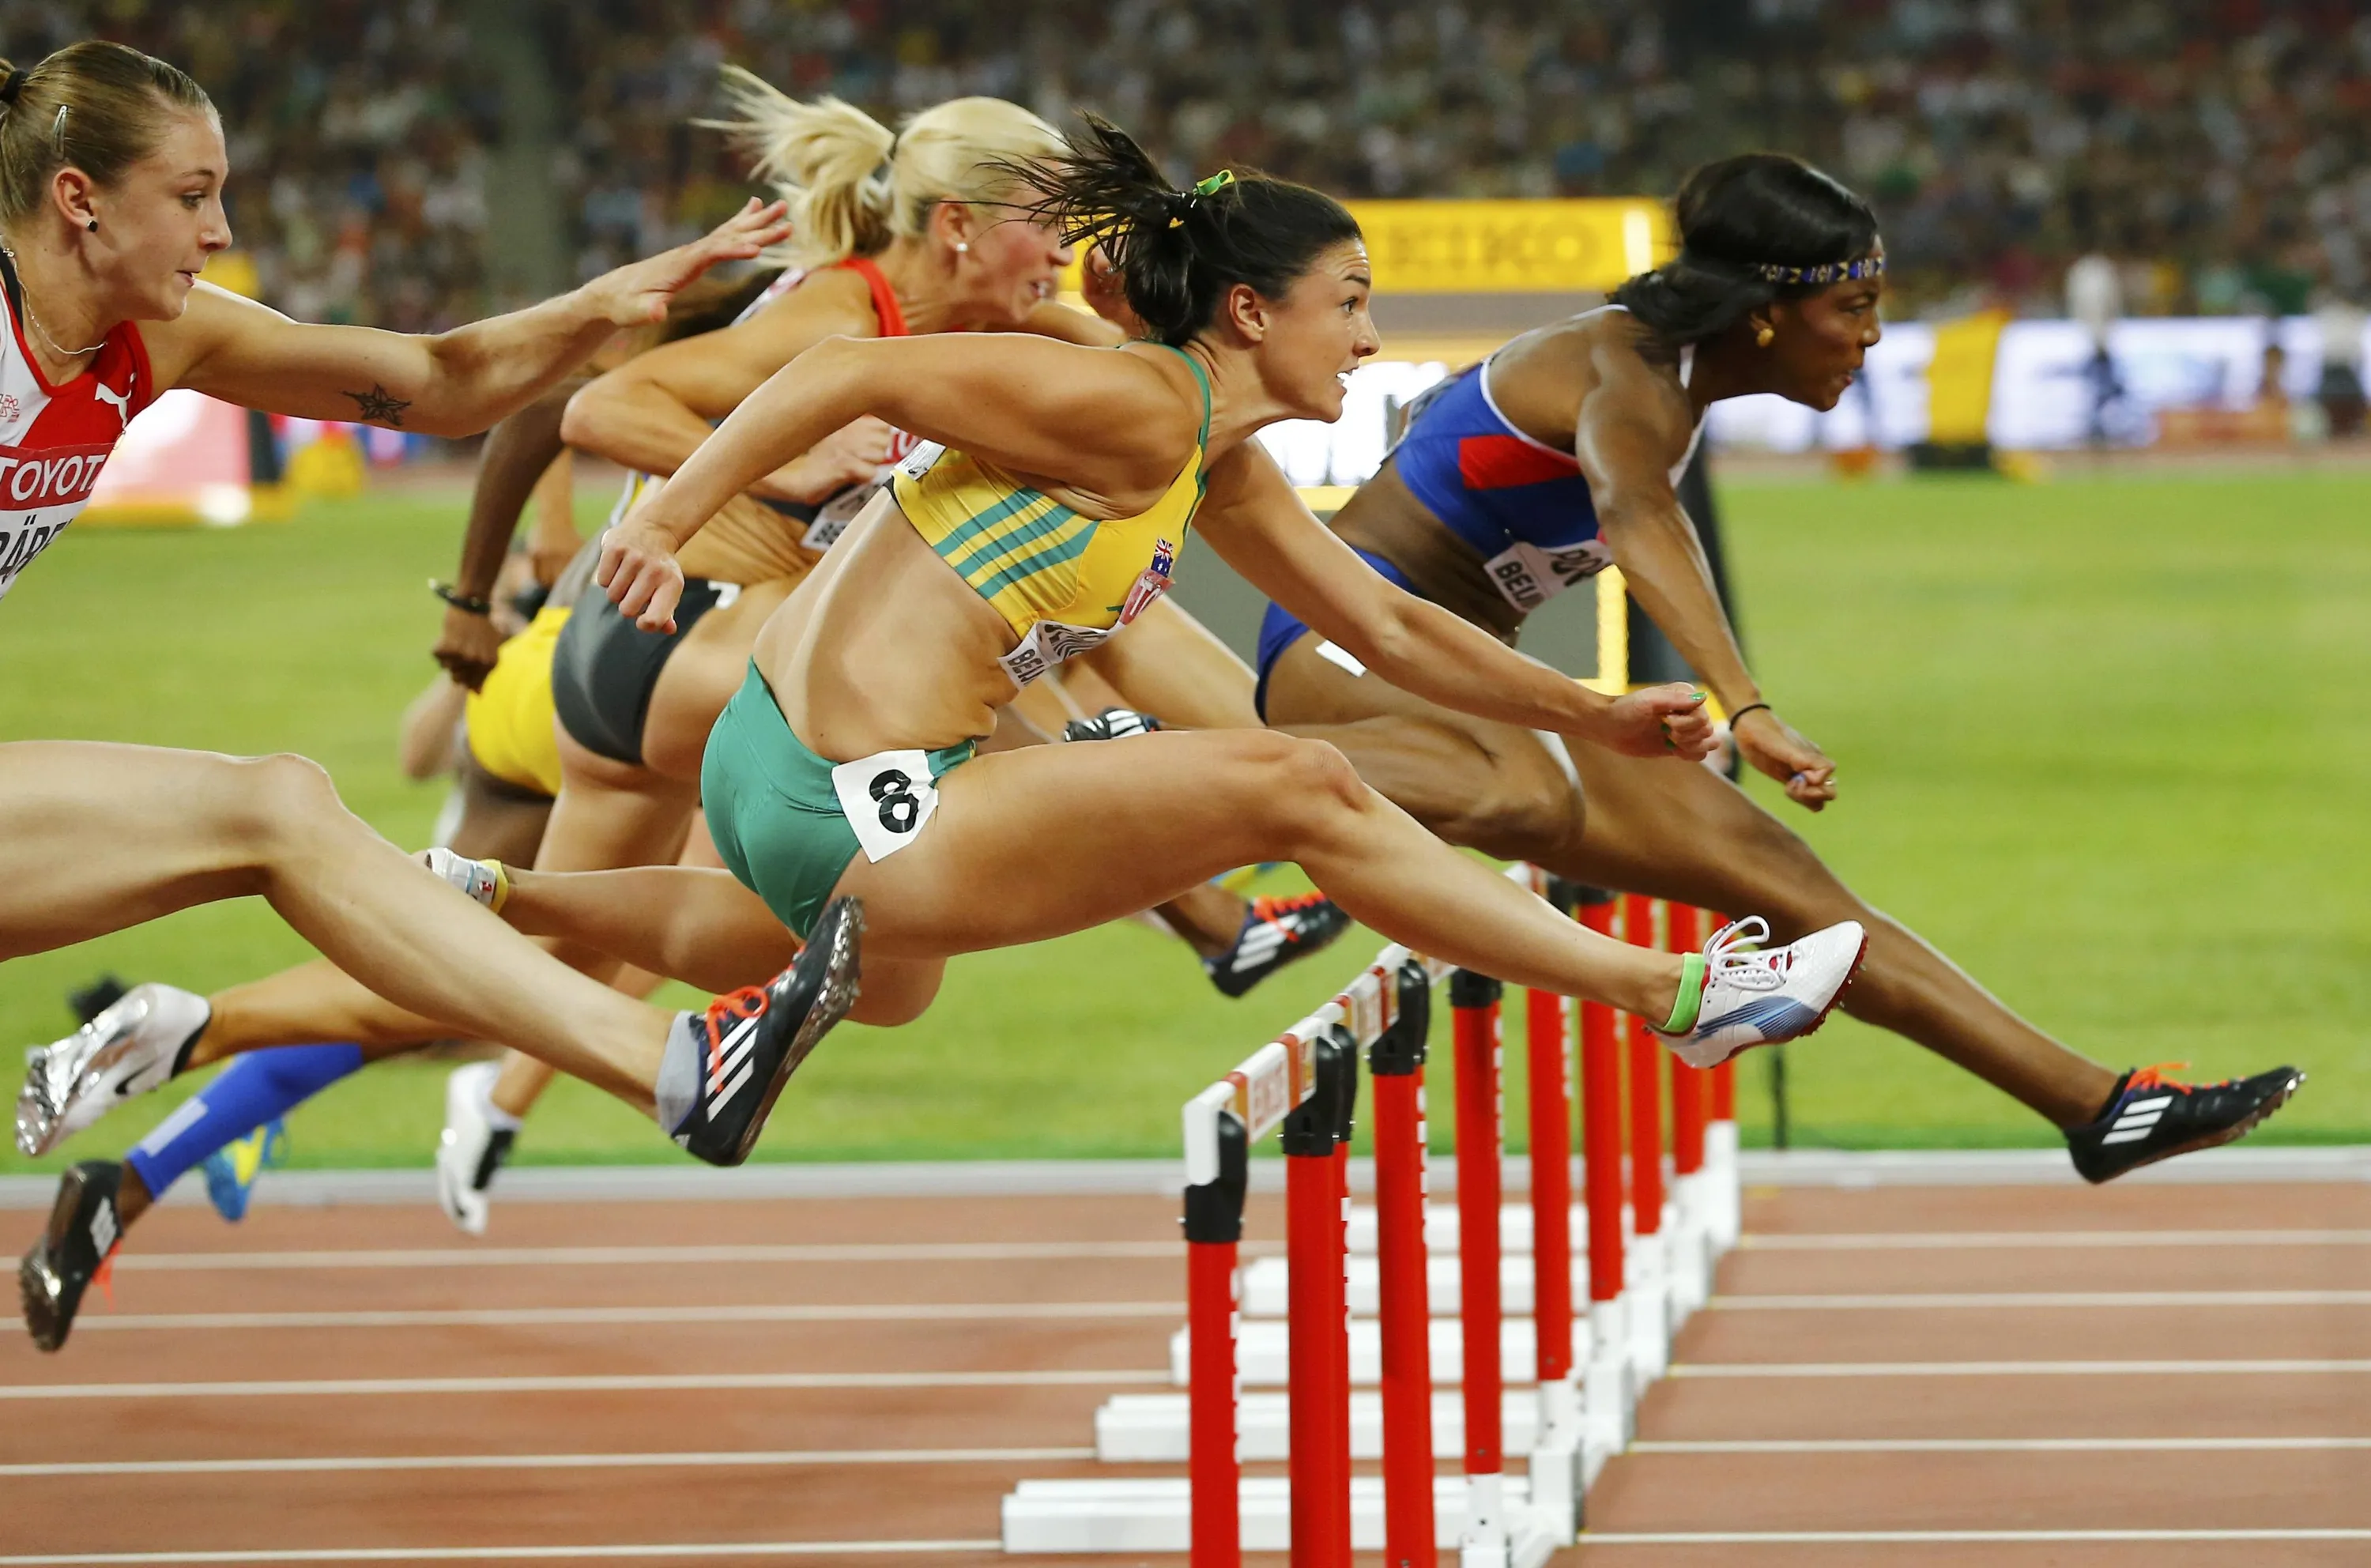 Спринт соревнования. Барьерный спринт легкая атлетика. Барьерный бег в легкой атлетике. Бег с барьерами (женщины – 100 м, мужчины – 110 м, 400 м).. Беговая дисциплина Барьерный бег 100м.